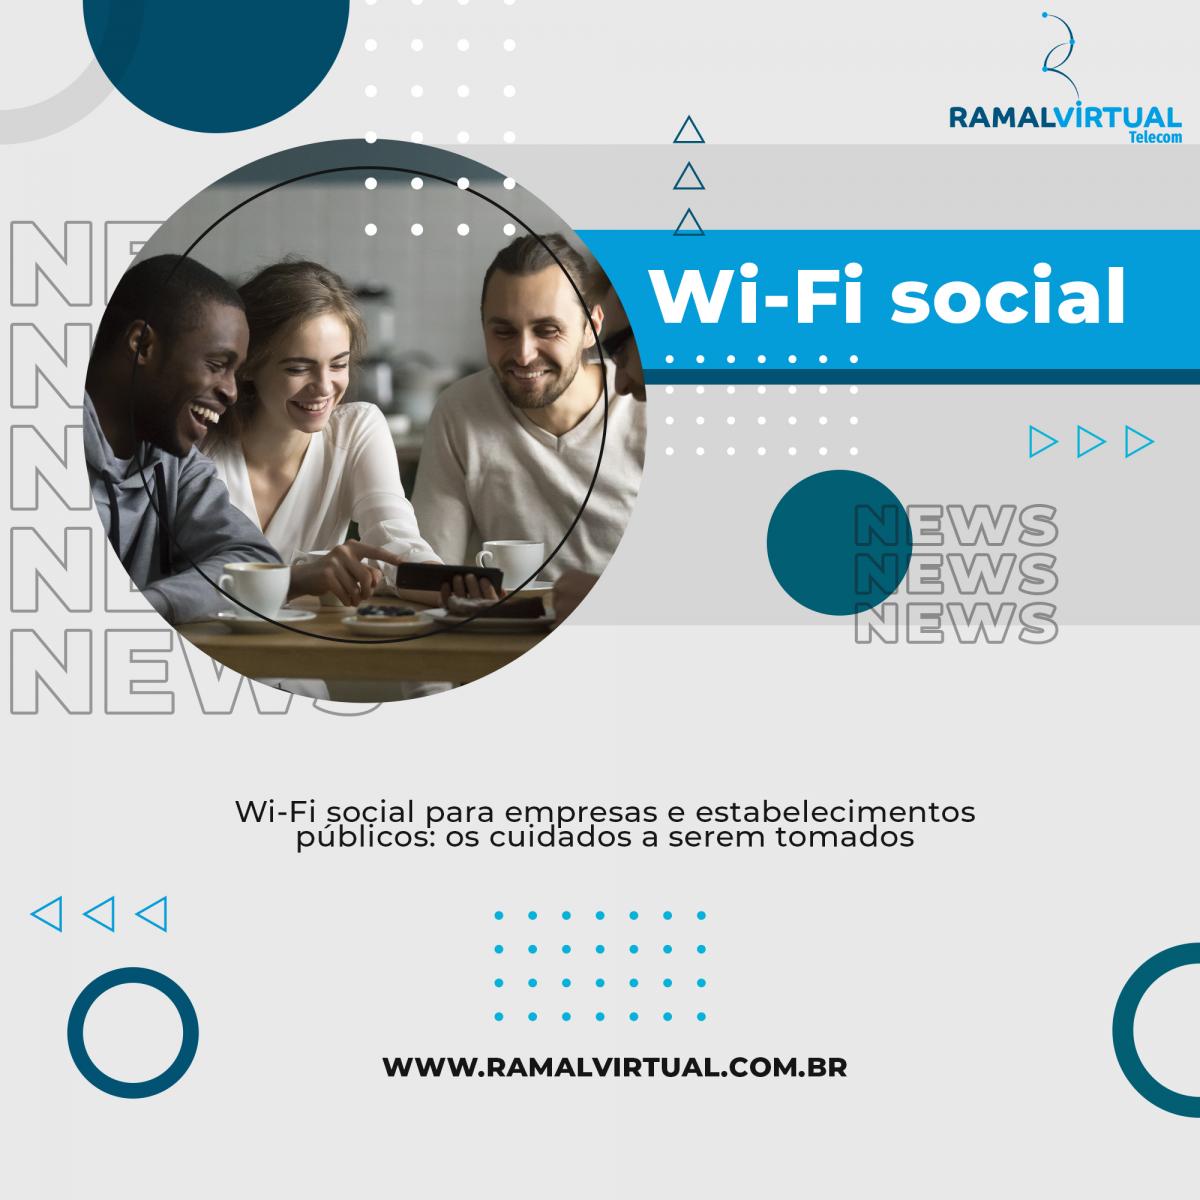 [Wi-Fi social para empresas e estabelecimentos públicos: os cuidados a serem tomados]